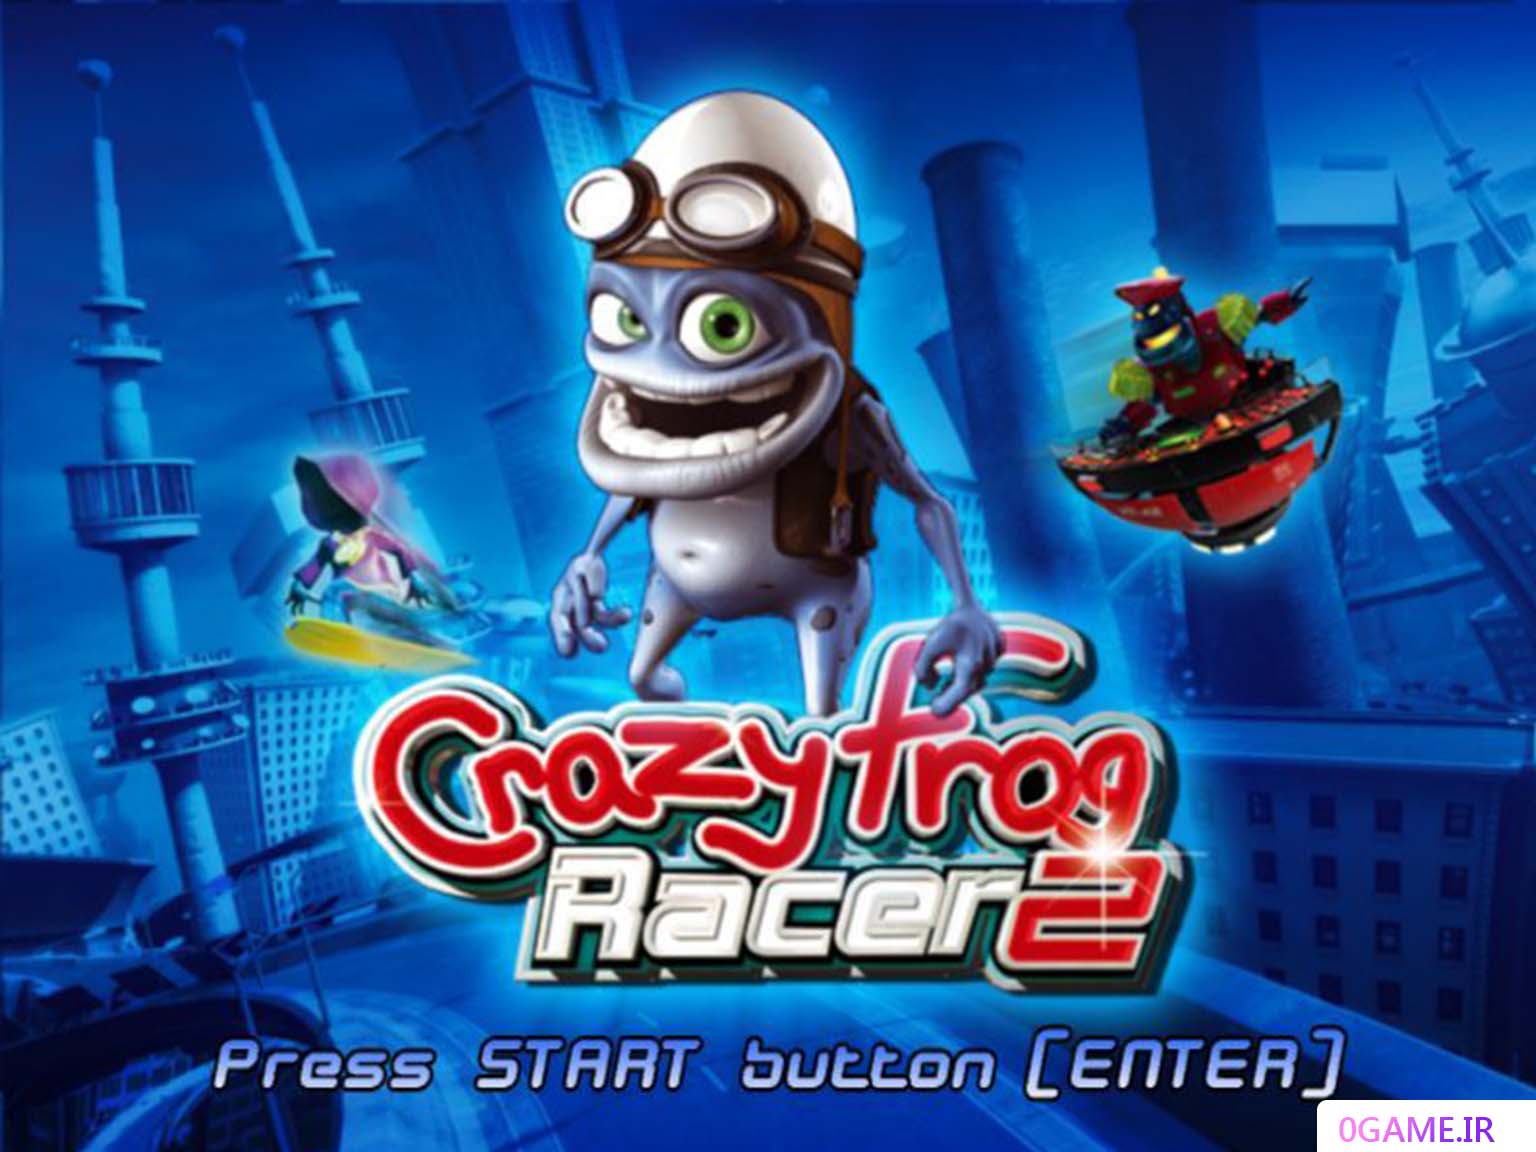 دانلود بازی قورباغه دیوانه 2 (Crazy Frog Racer) نسخه کامل برای کامپیوتر